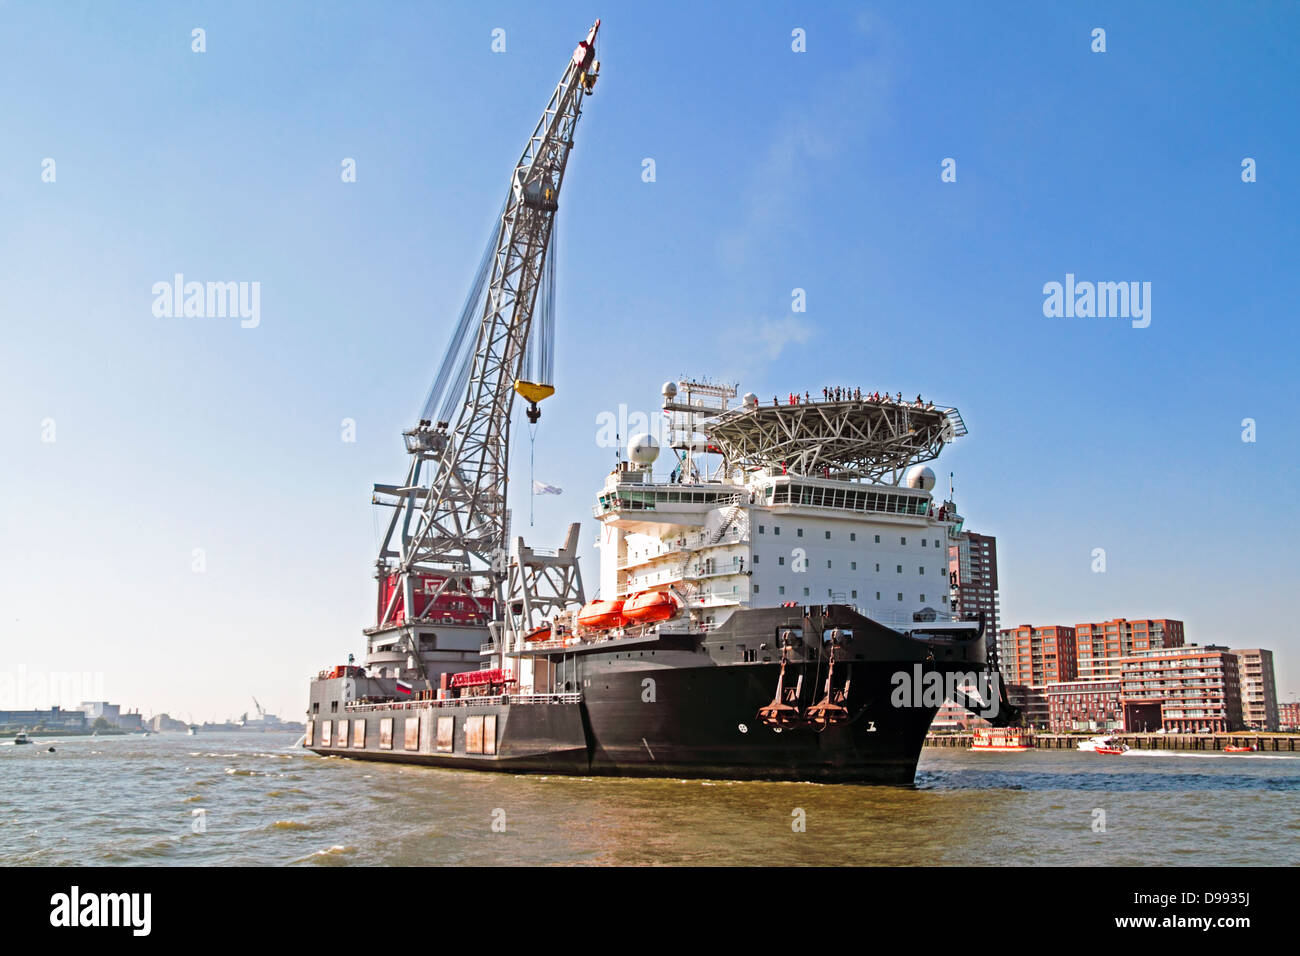 Carguero en el puerto de Rotterdam, en los Países Bajos Foto de stock